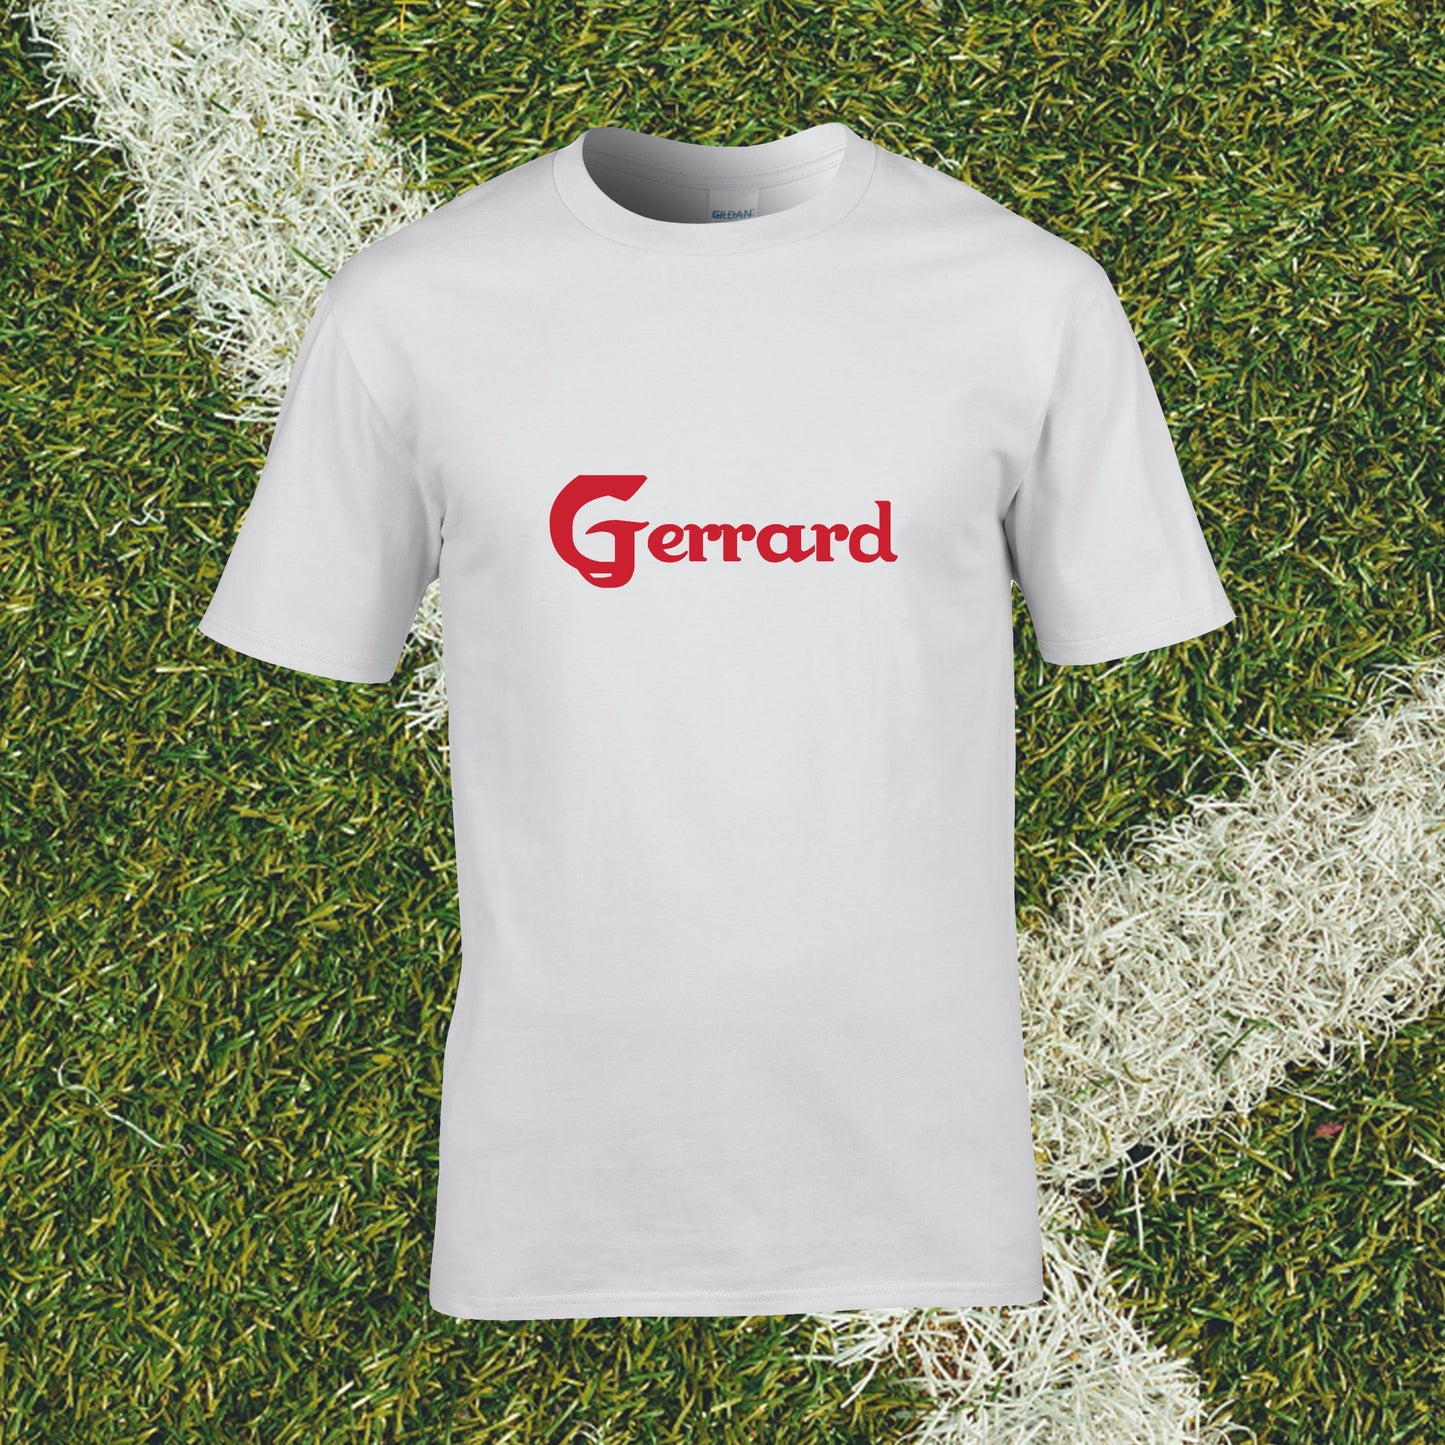 Steven Gerrard Supporter T-Shirt - Man of The Match Football